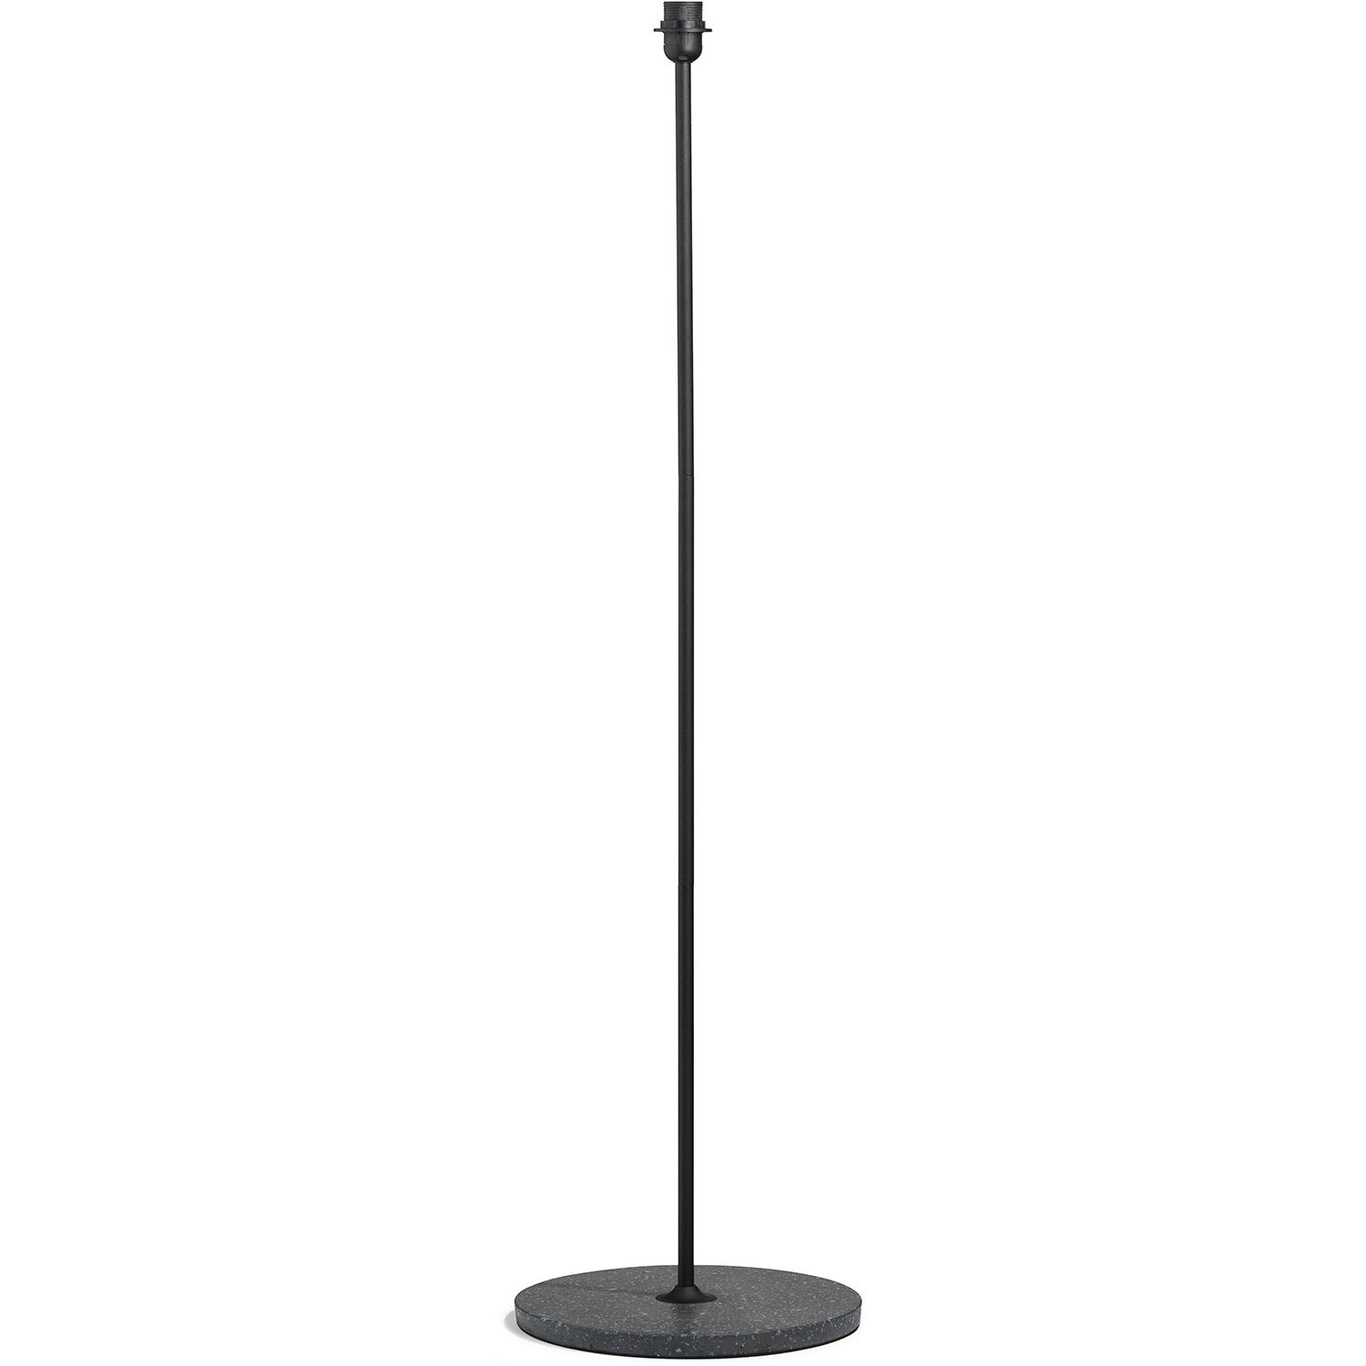 Common Floor Lamp, Black/Terrazzo